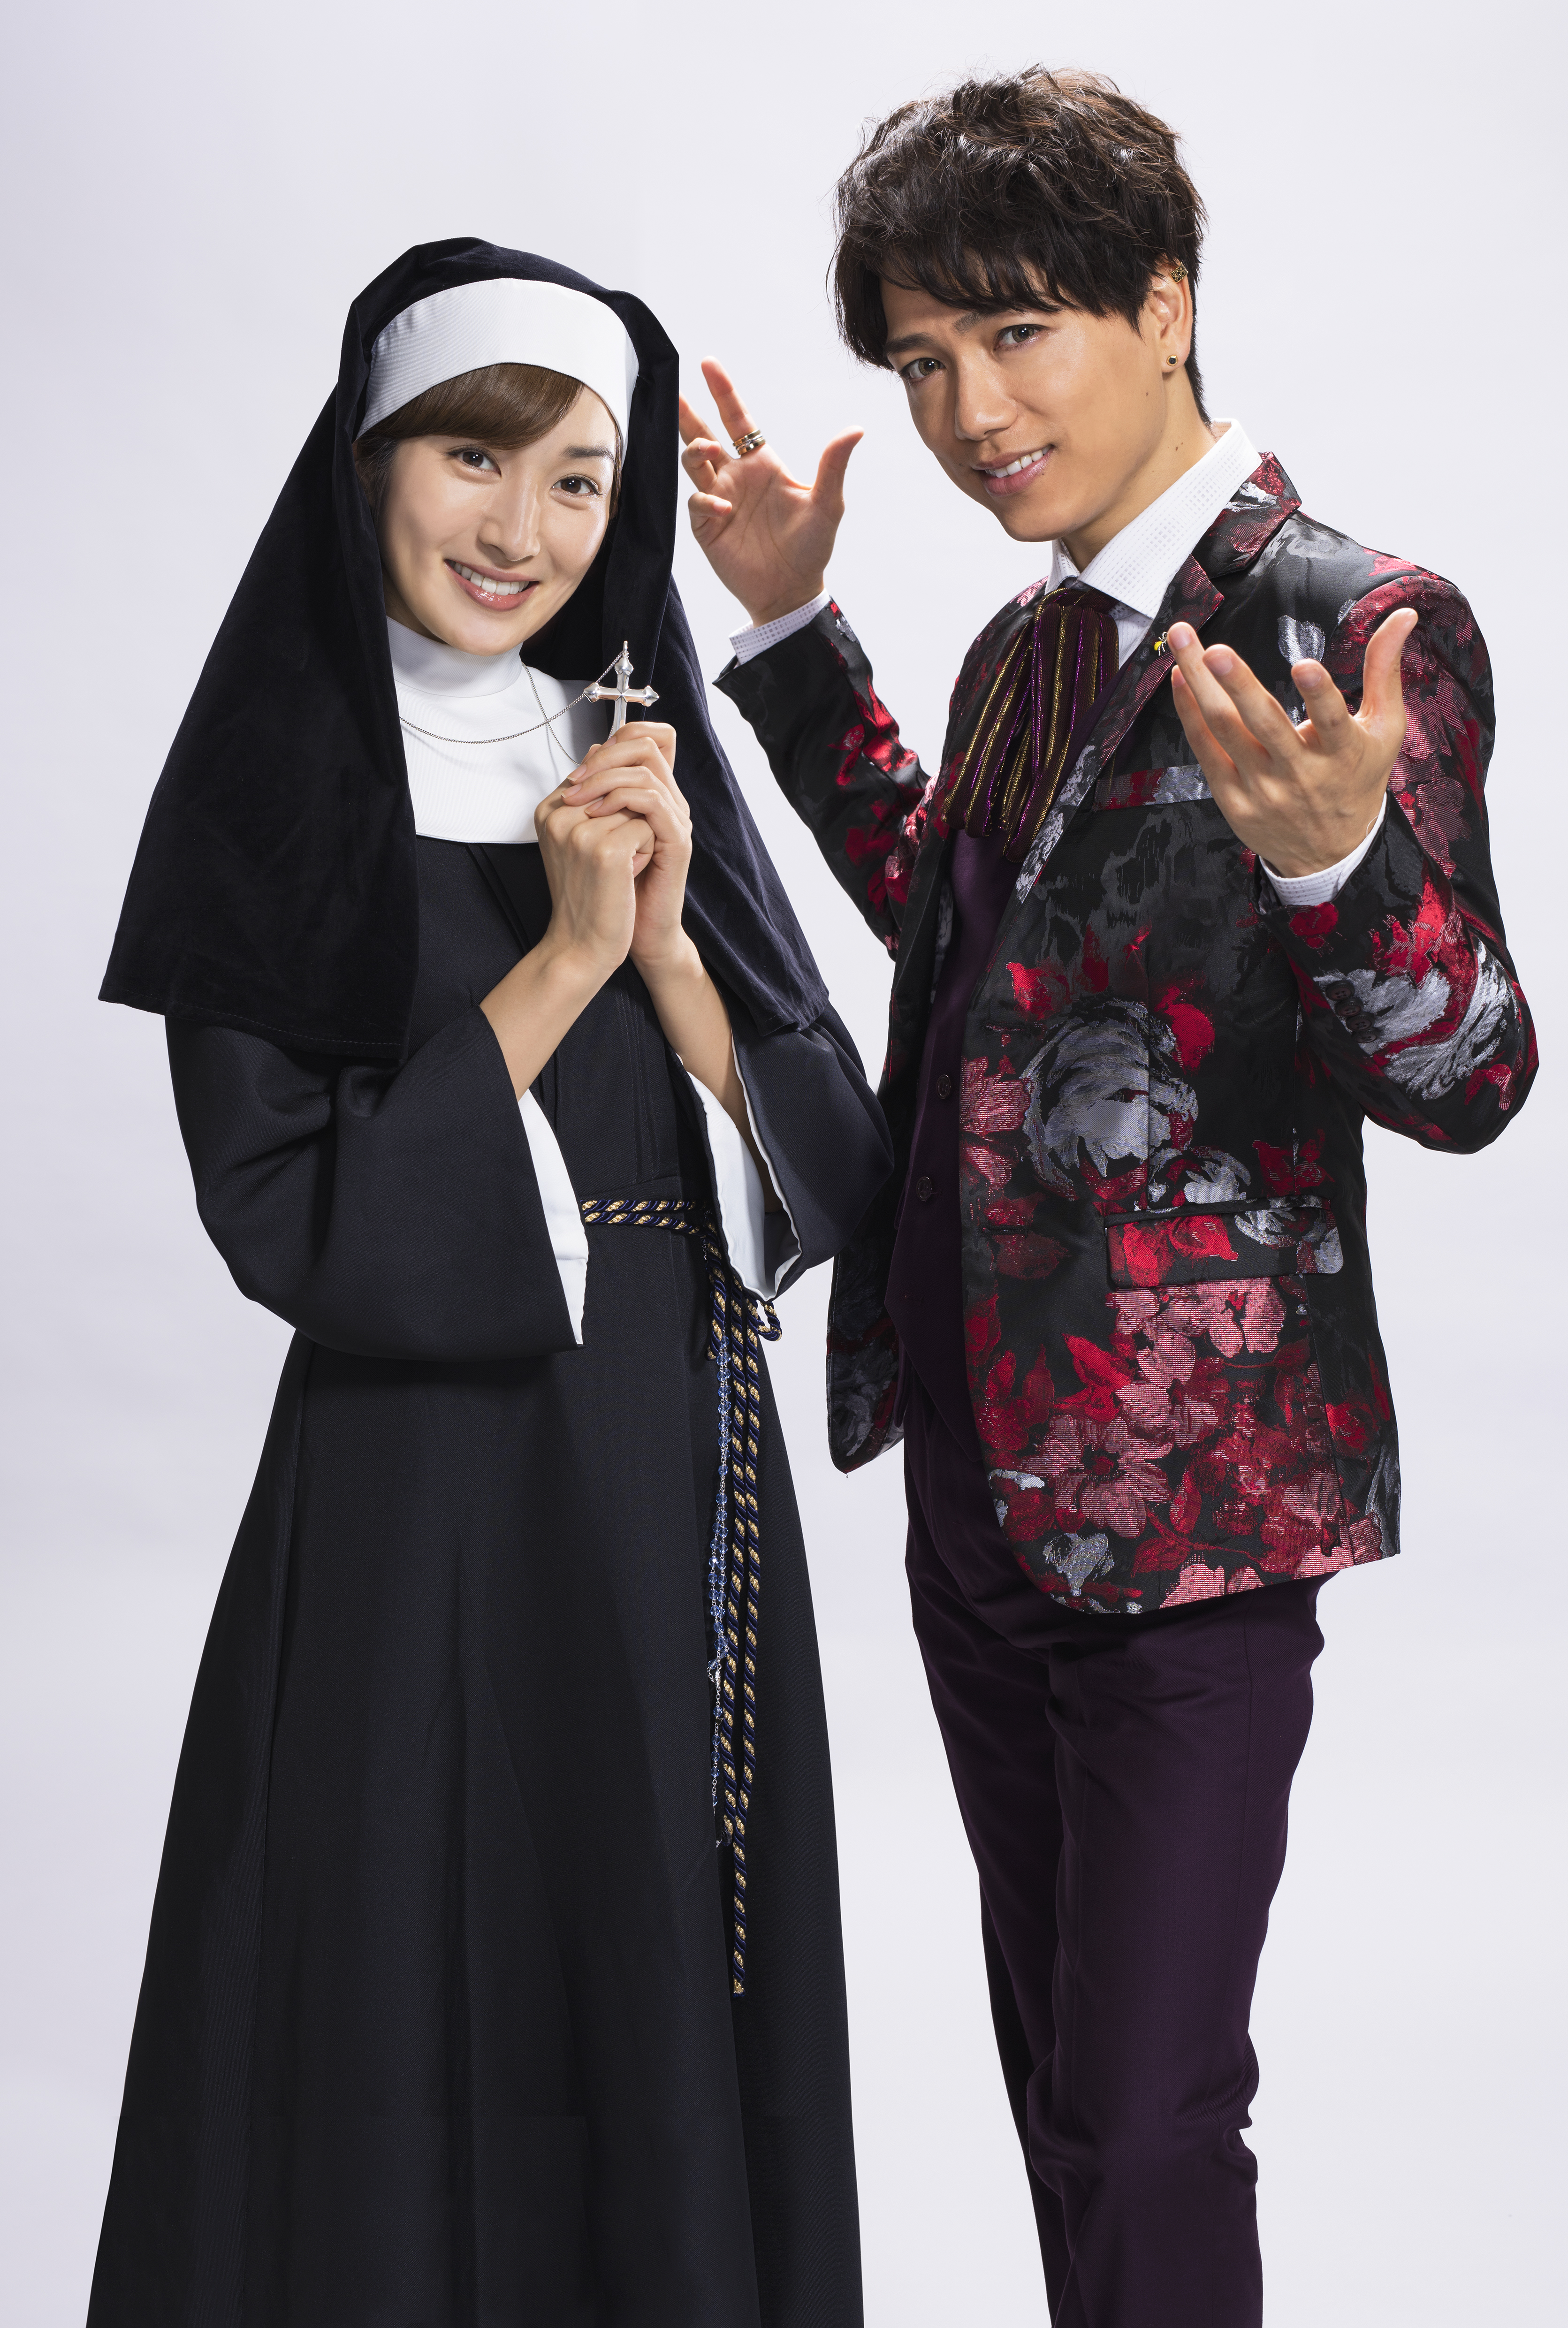 7月スタートドラマ「あいの結婚相談所」で山崎育三郎が初主演。共演の高梨臨は「完璧な王子さま、山崎さんのいろいろな面が見られたら」